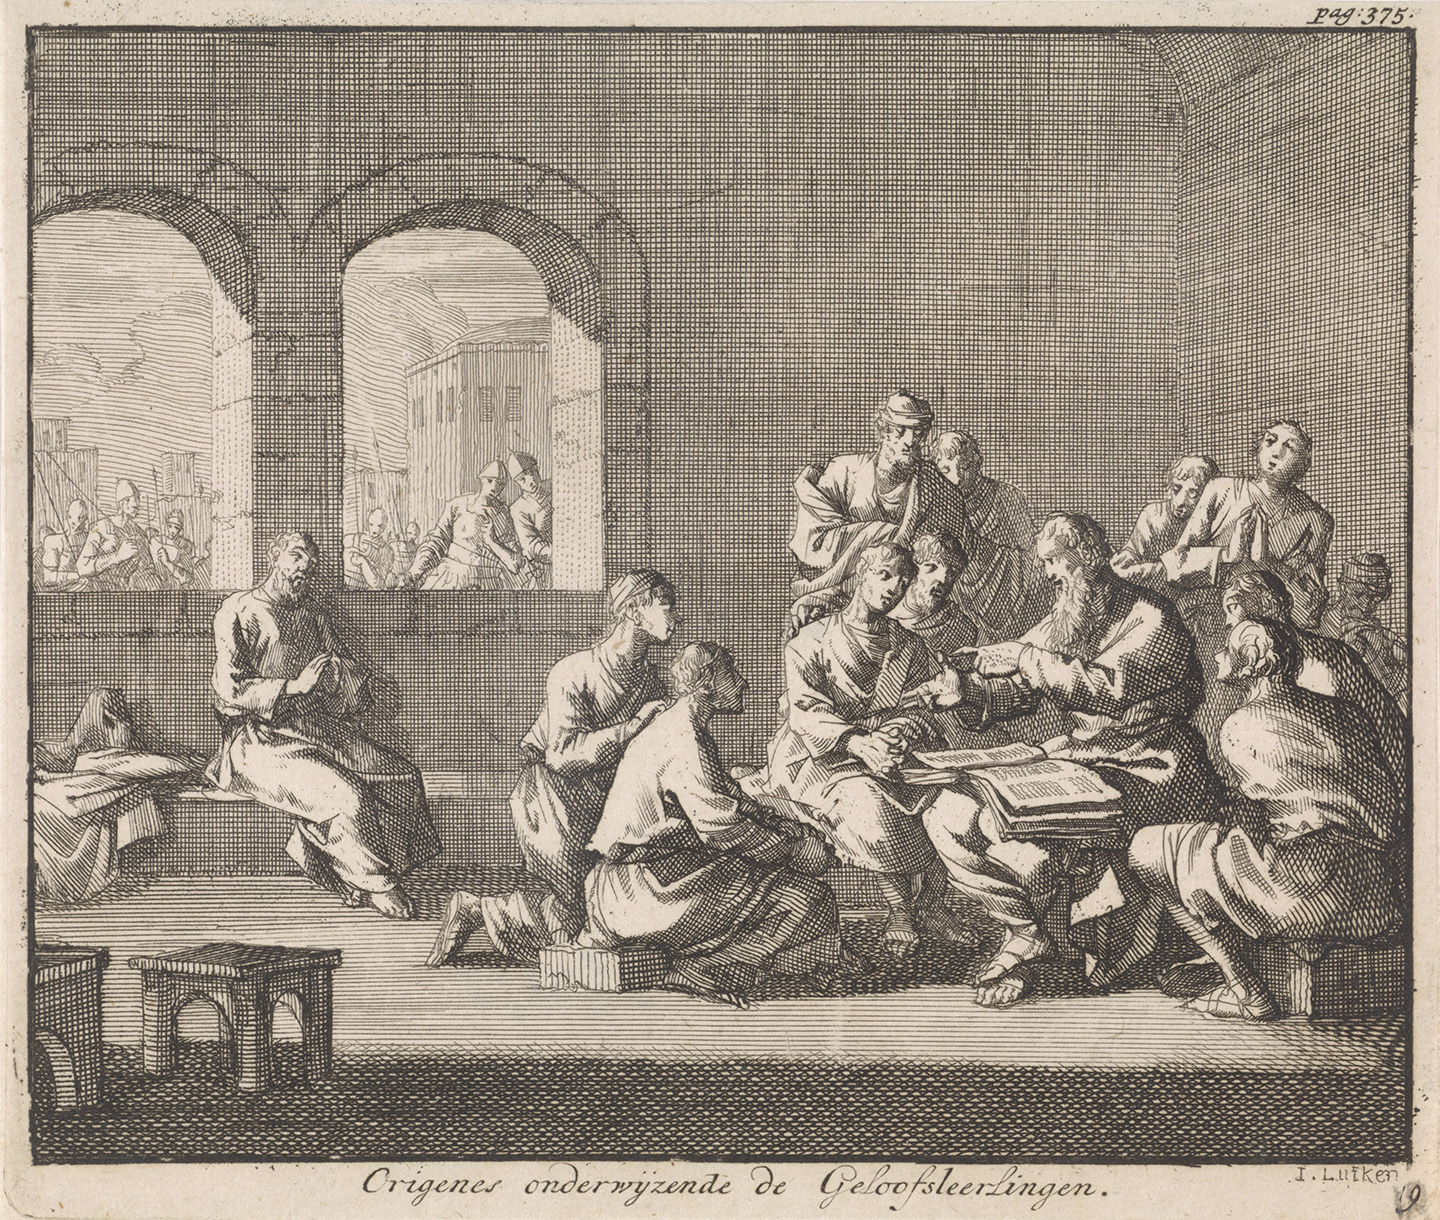 Một bức hình minh họa trong sách viết tay miêu tả nhà thần học Origen đang dạy giáo lý cho một nhóm học trò, năm 1700, của họa sĩ Jan Luyken. Bảo tàng Rijksmuseum, Amsterdam. (Ảnh: Tài liệu công cộng)